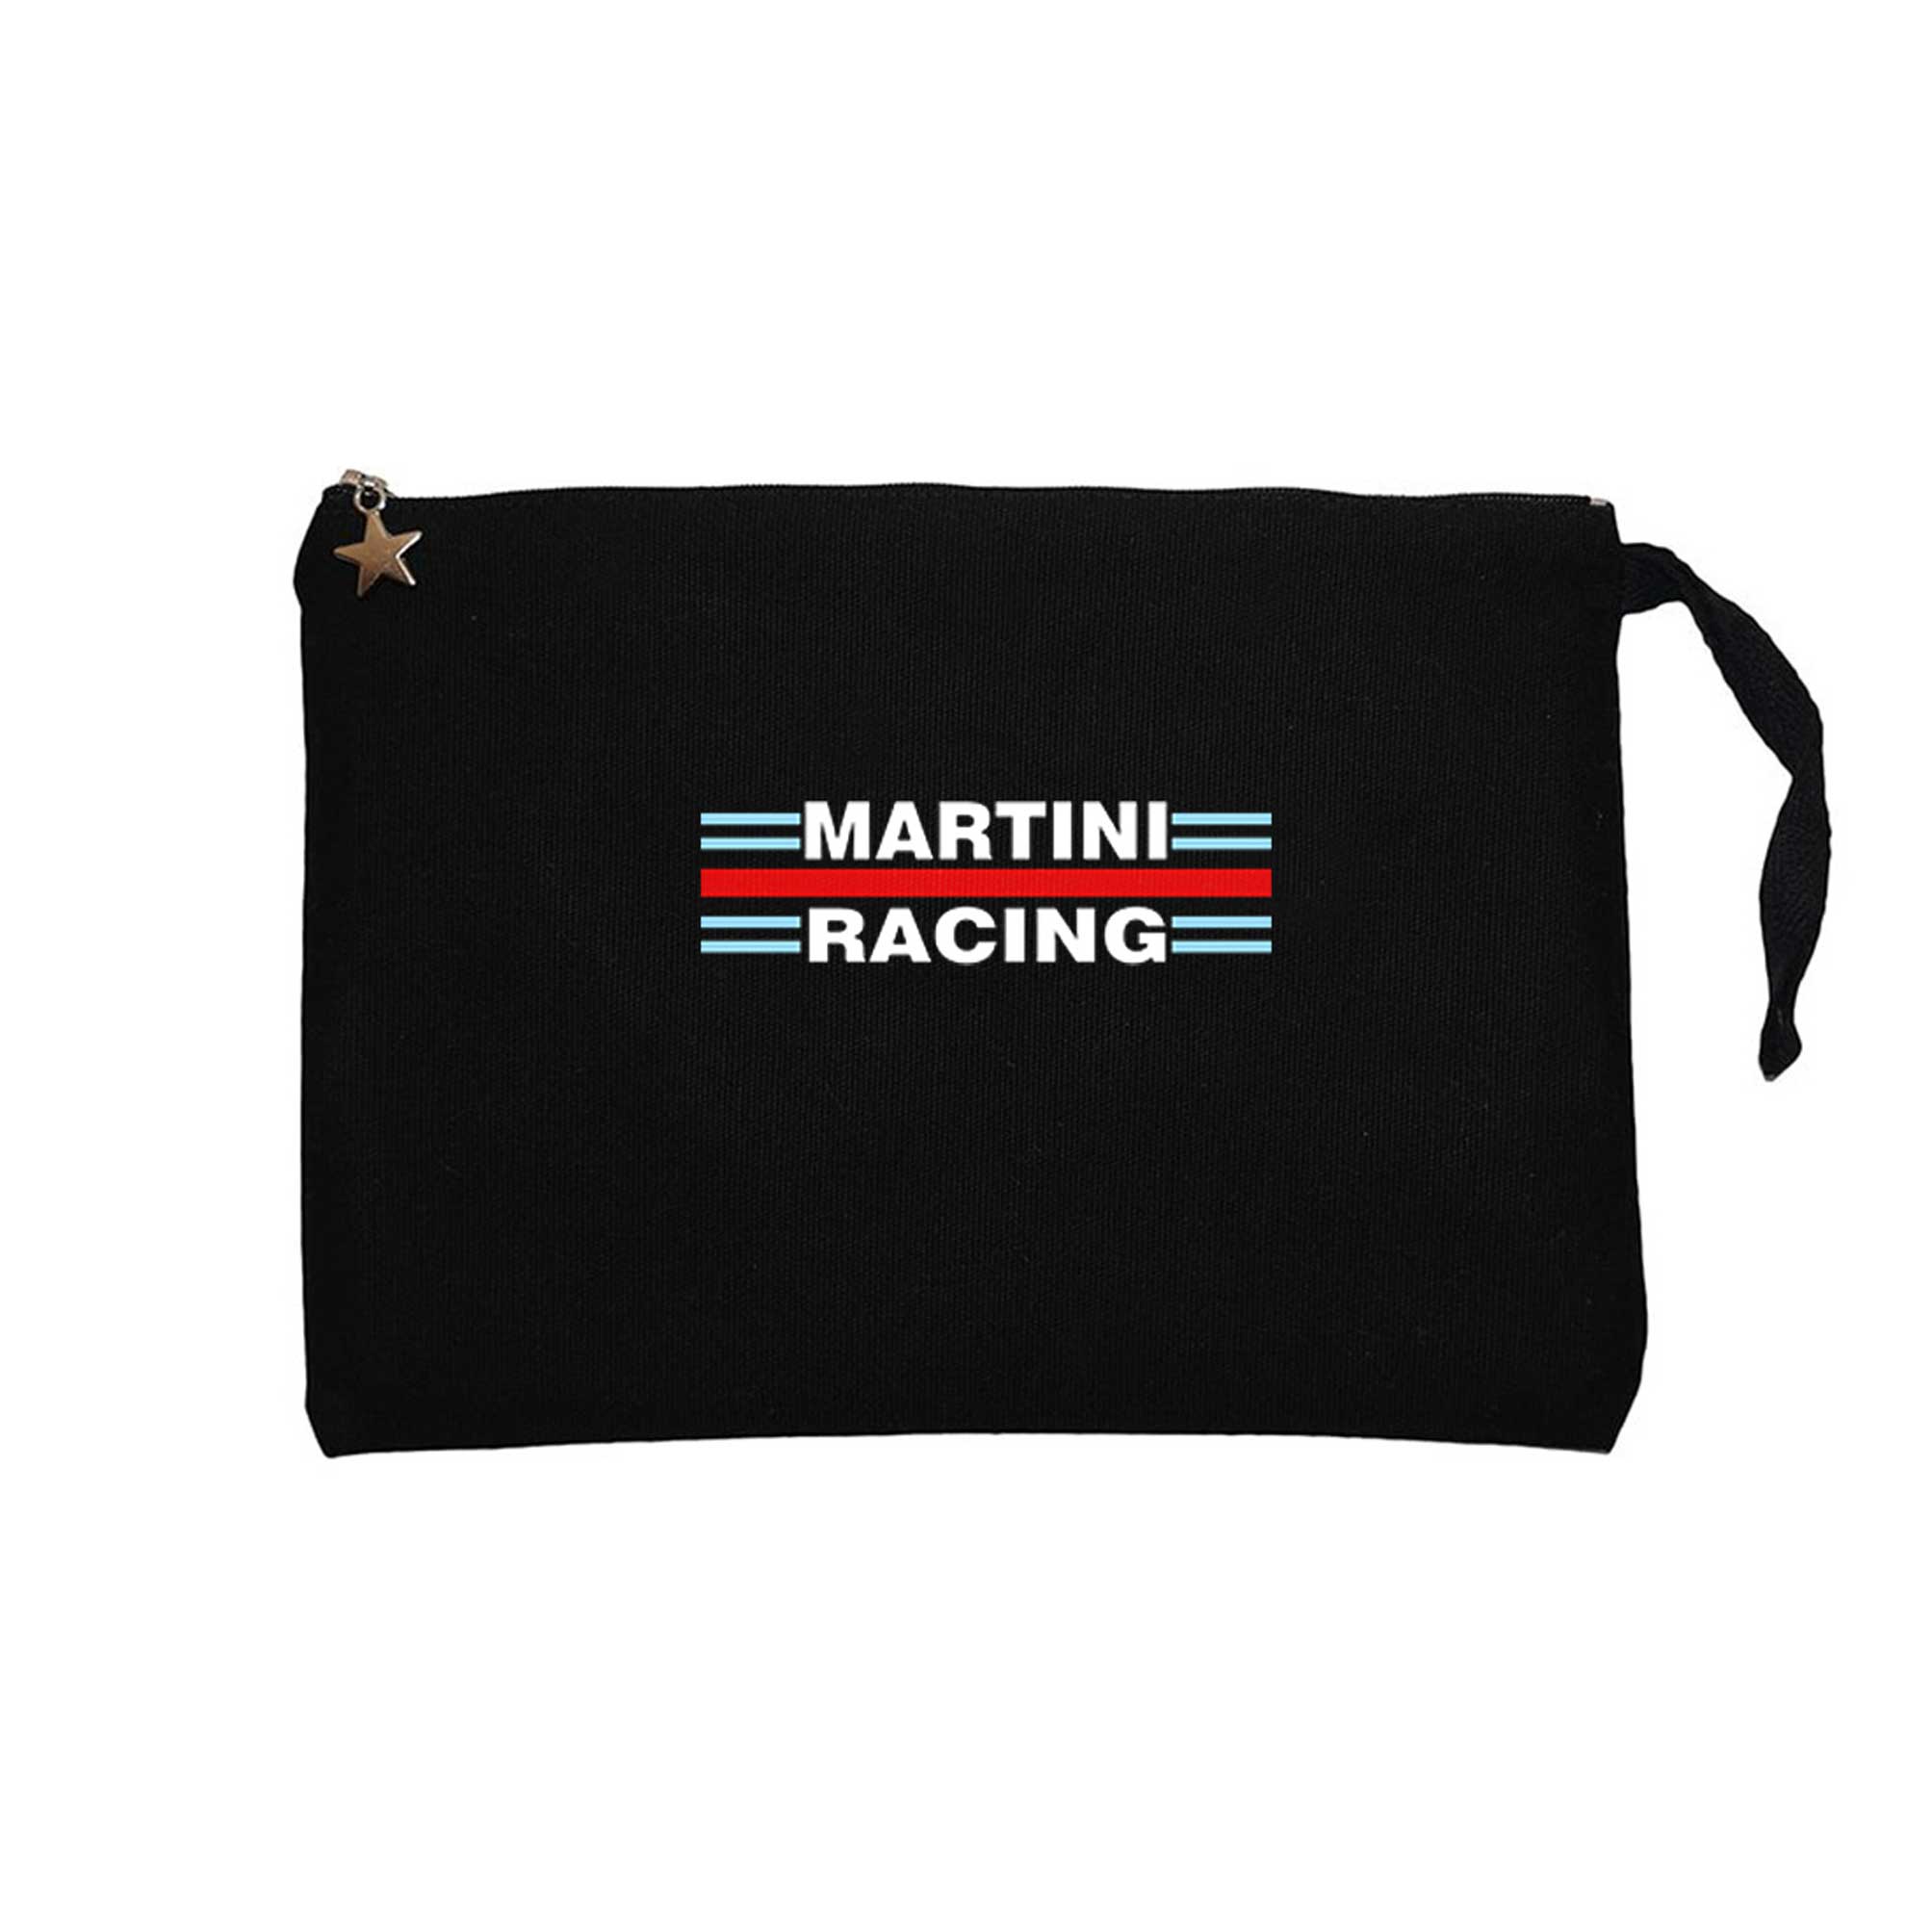 Martini Racing Siyah Clutch Astarlı Cüzdan / El Çantası